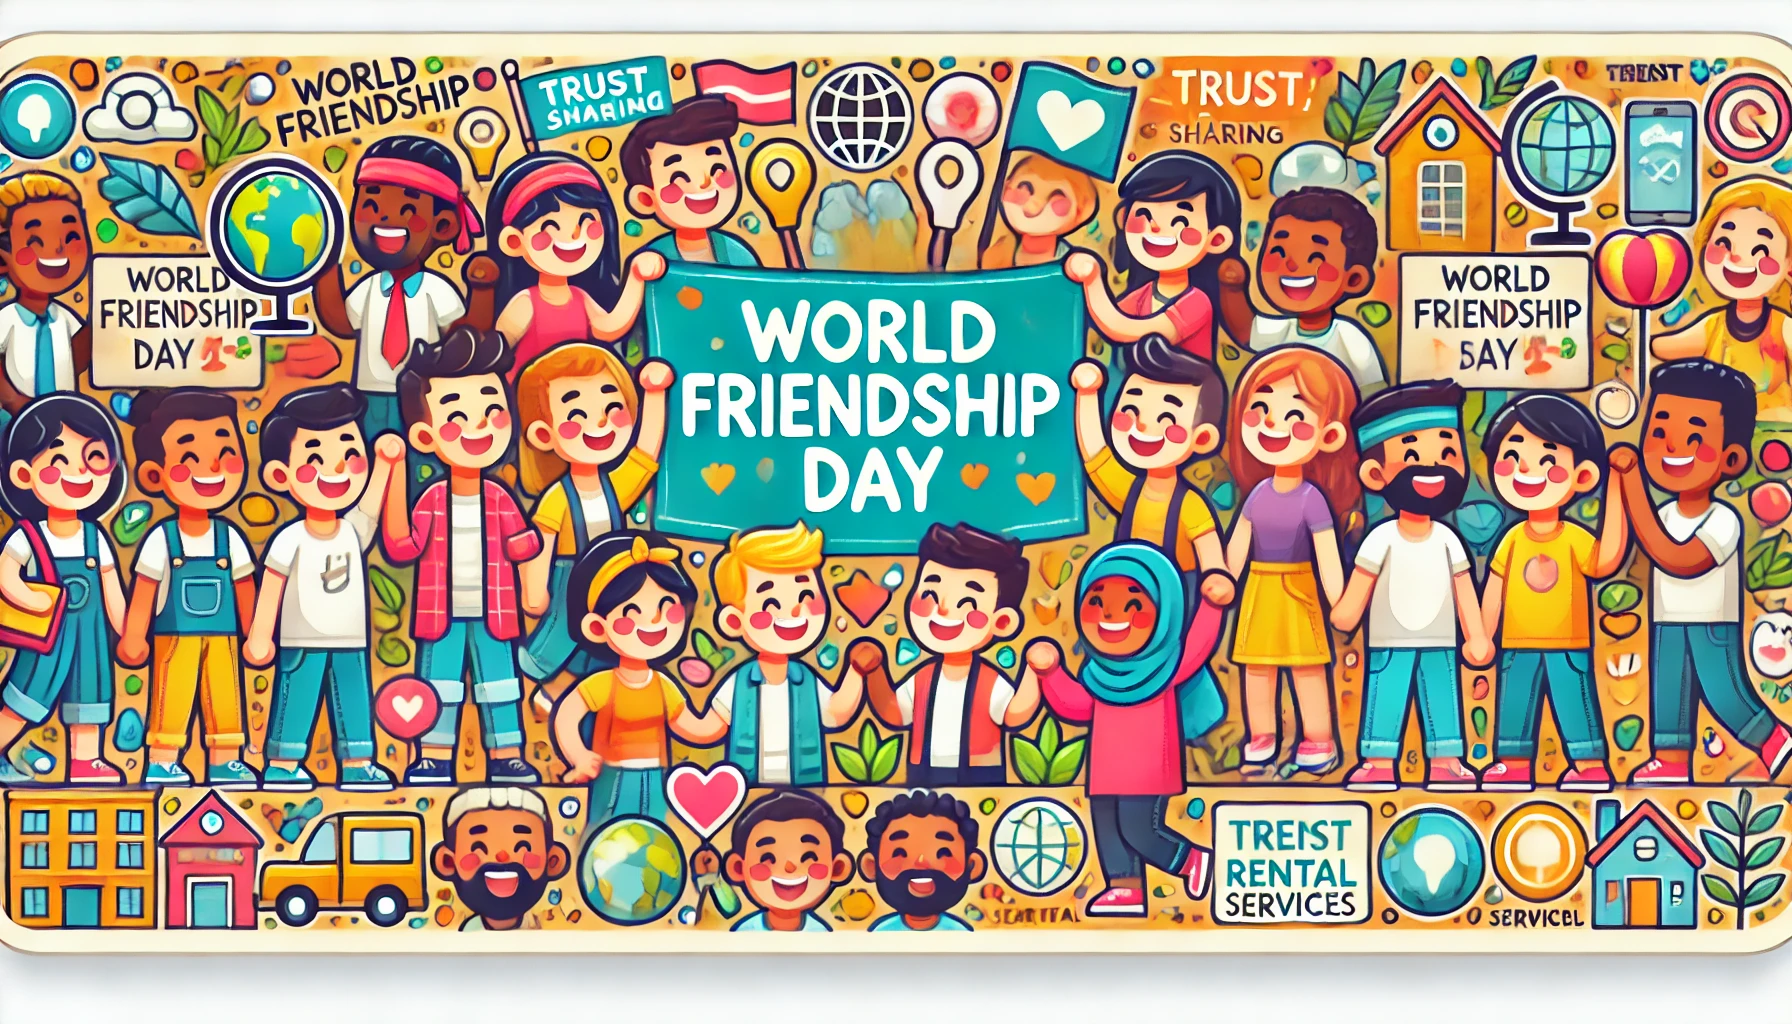 Immagine 30 luglio, Giornata Mondiale dell'Amicizia